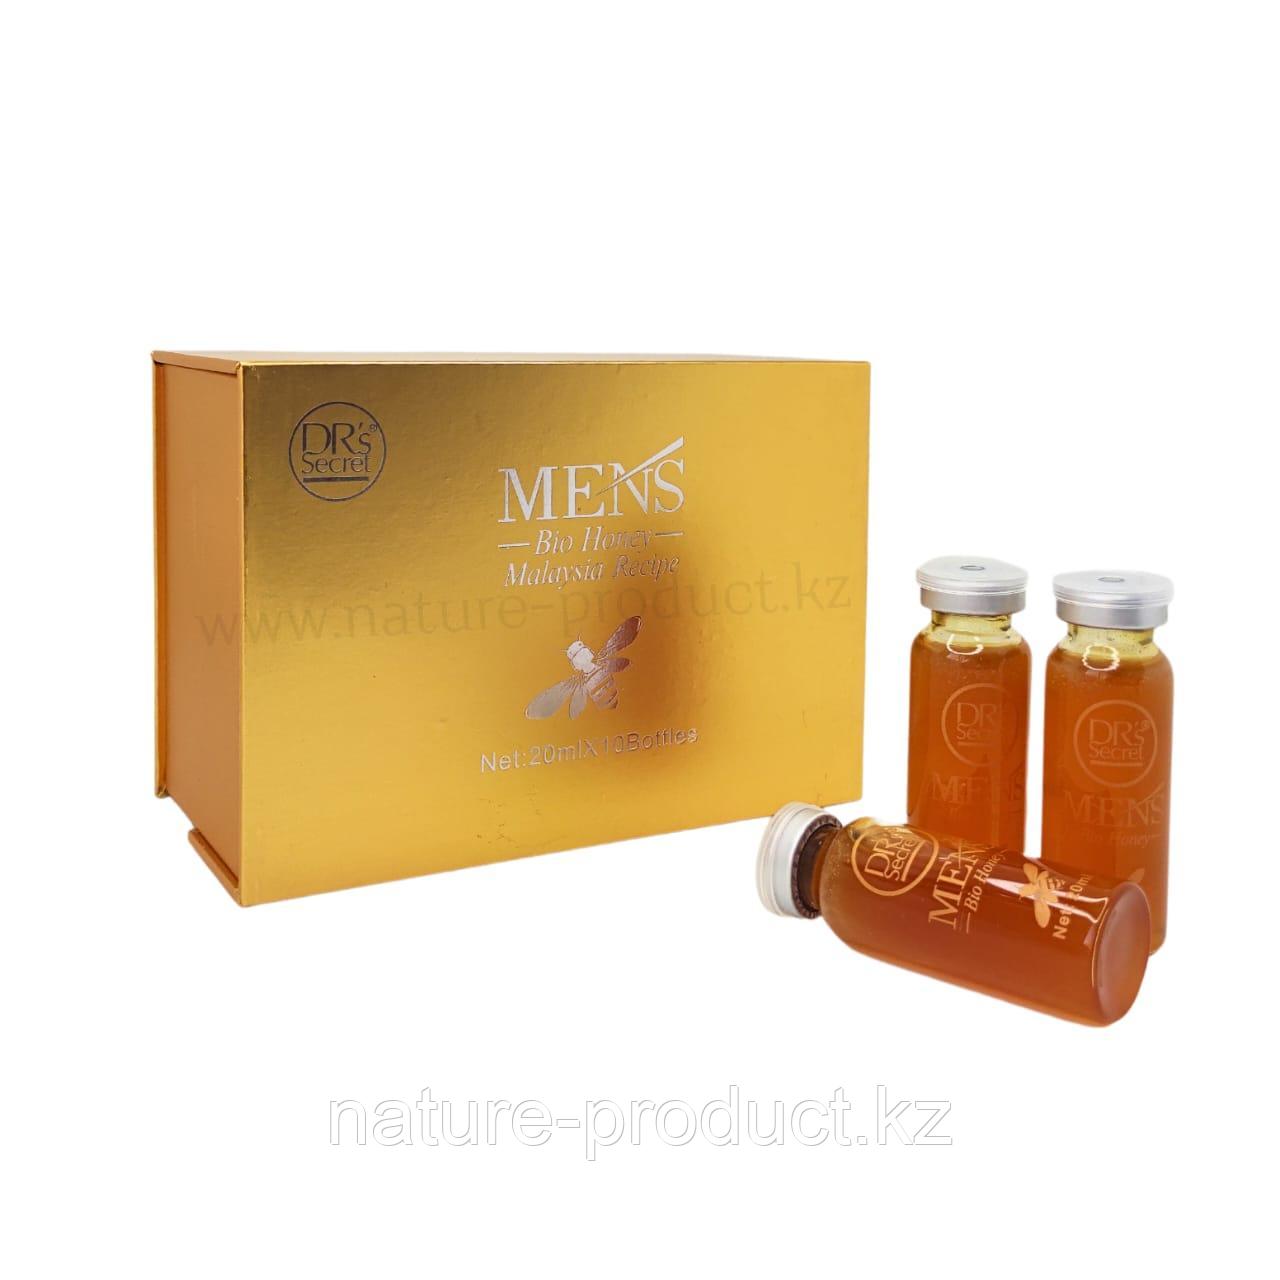 Био-мед для мужчин Mens Bio Honey 10 бутылей по 20 мл. Малазия DRS Secret